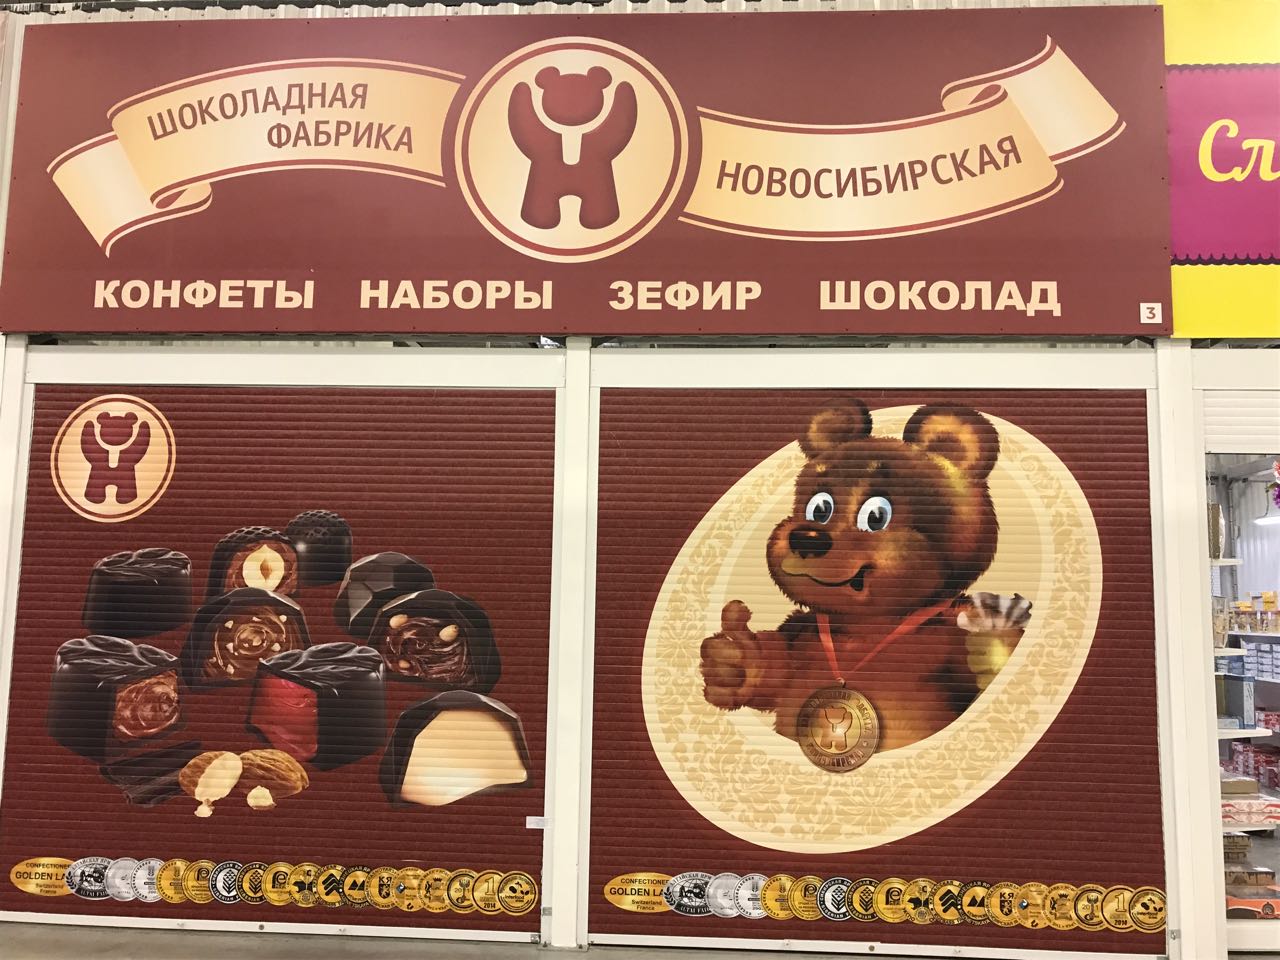 Фабрика шоколада цена. Новосибирская шоколадная фабрика конфеты Новосибирские. Конфеты Новосибирской шоколадной фабрики в Новосибирске. Новосибирская шоколадная фабрика мишка. ЗАО шоколадная фабрика Новосибирская.